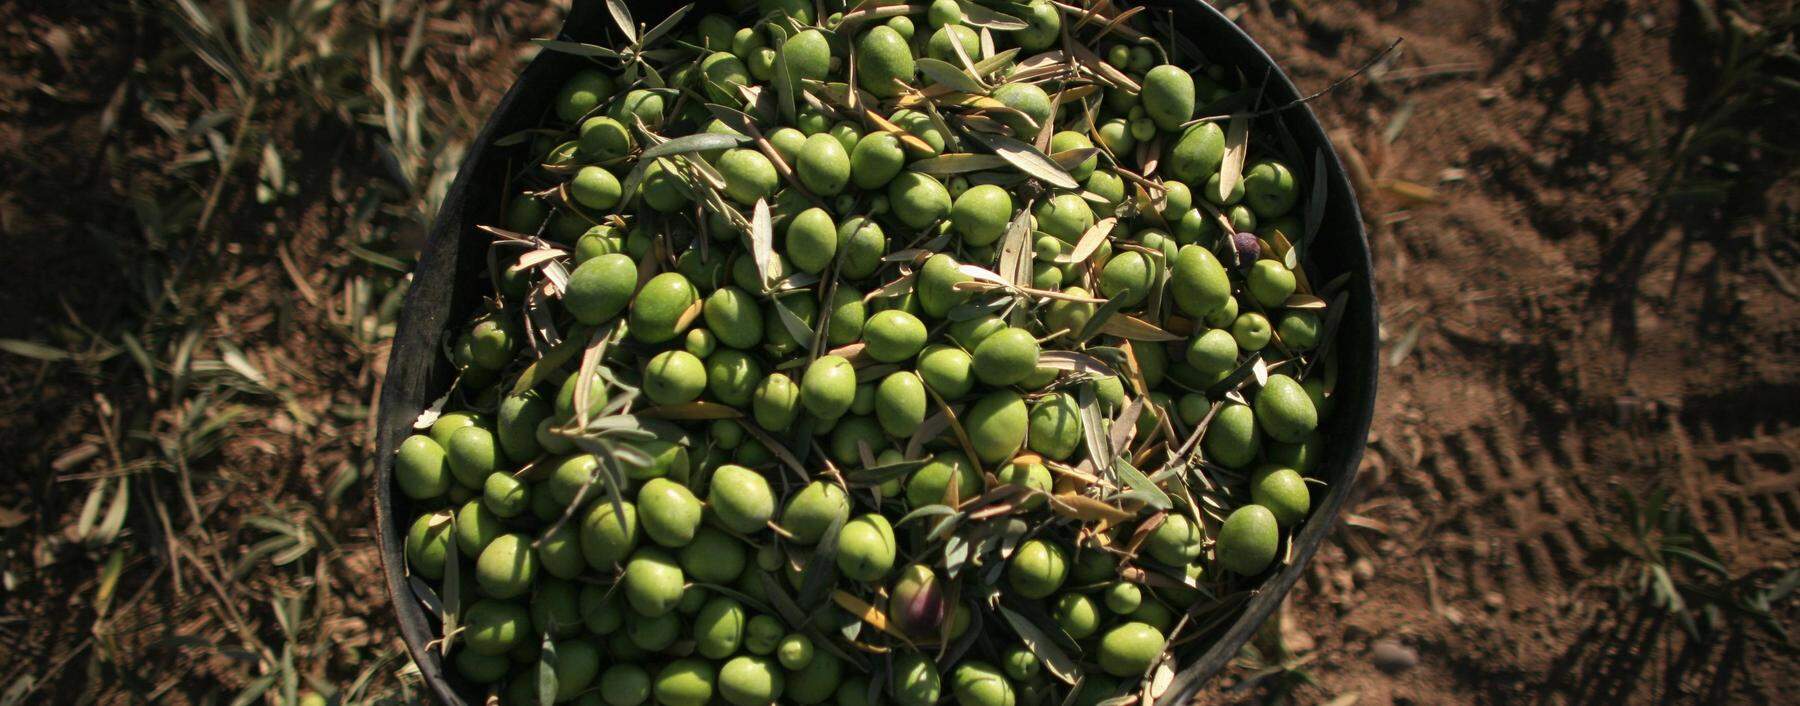 In Spanien - das Land ist Weltmarktführer bei der Olivenöl-Herstellung - ist die Situation besonders angespannt.